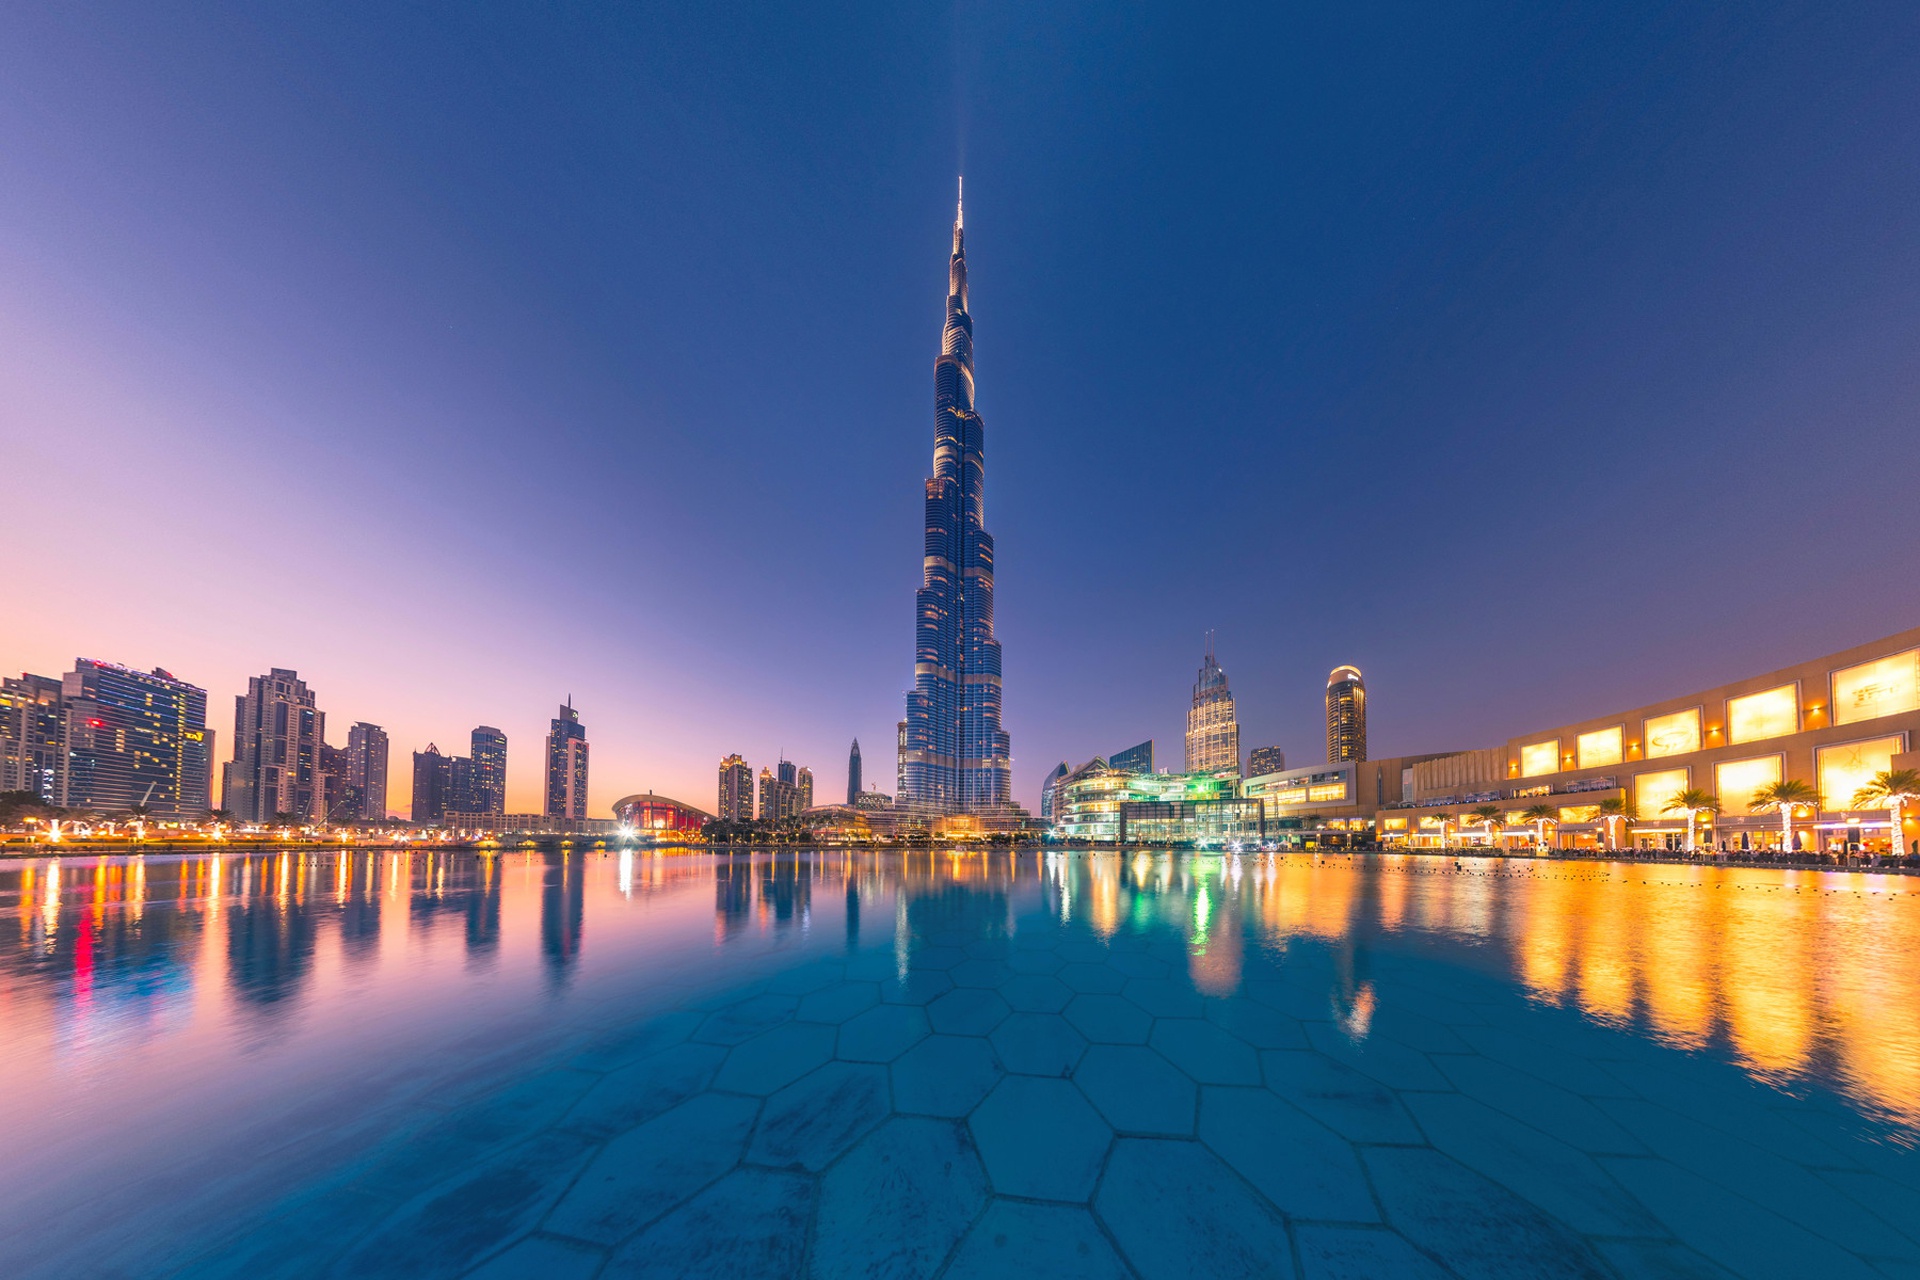 Burj Khalifa image